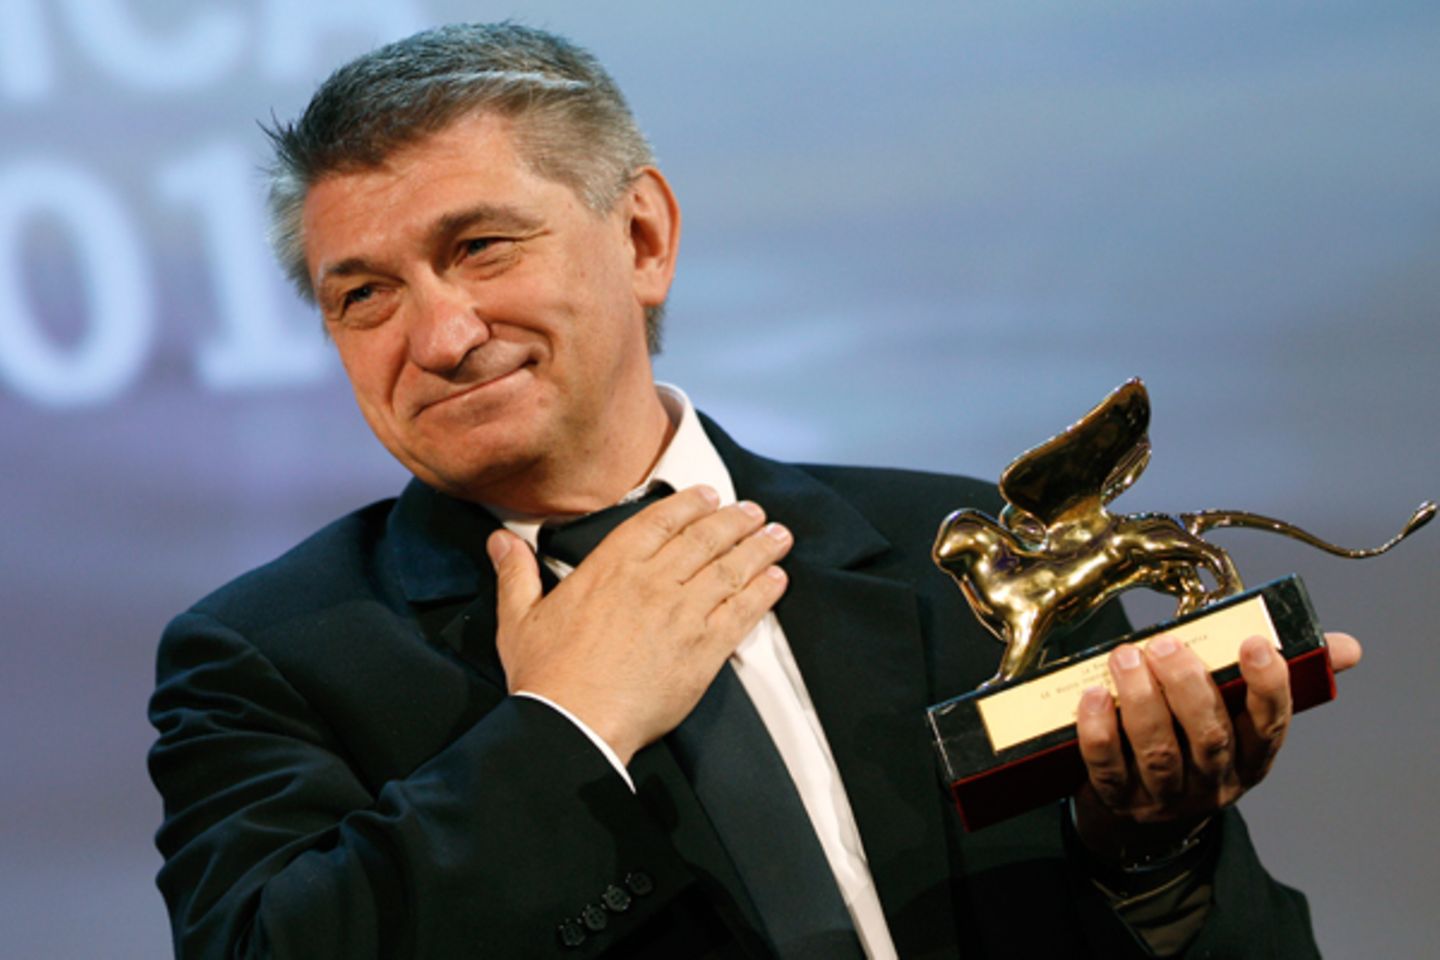 Die höchste Auszeichnung, der Goldene Löwe, geht an den Regisseur Alexander Sokurow für seinen Film "Faust", der auf Goethes Wer